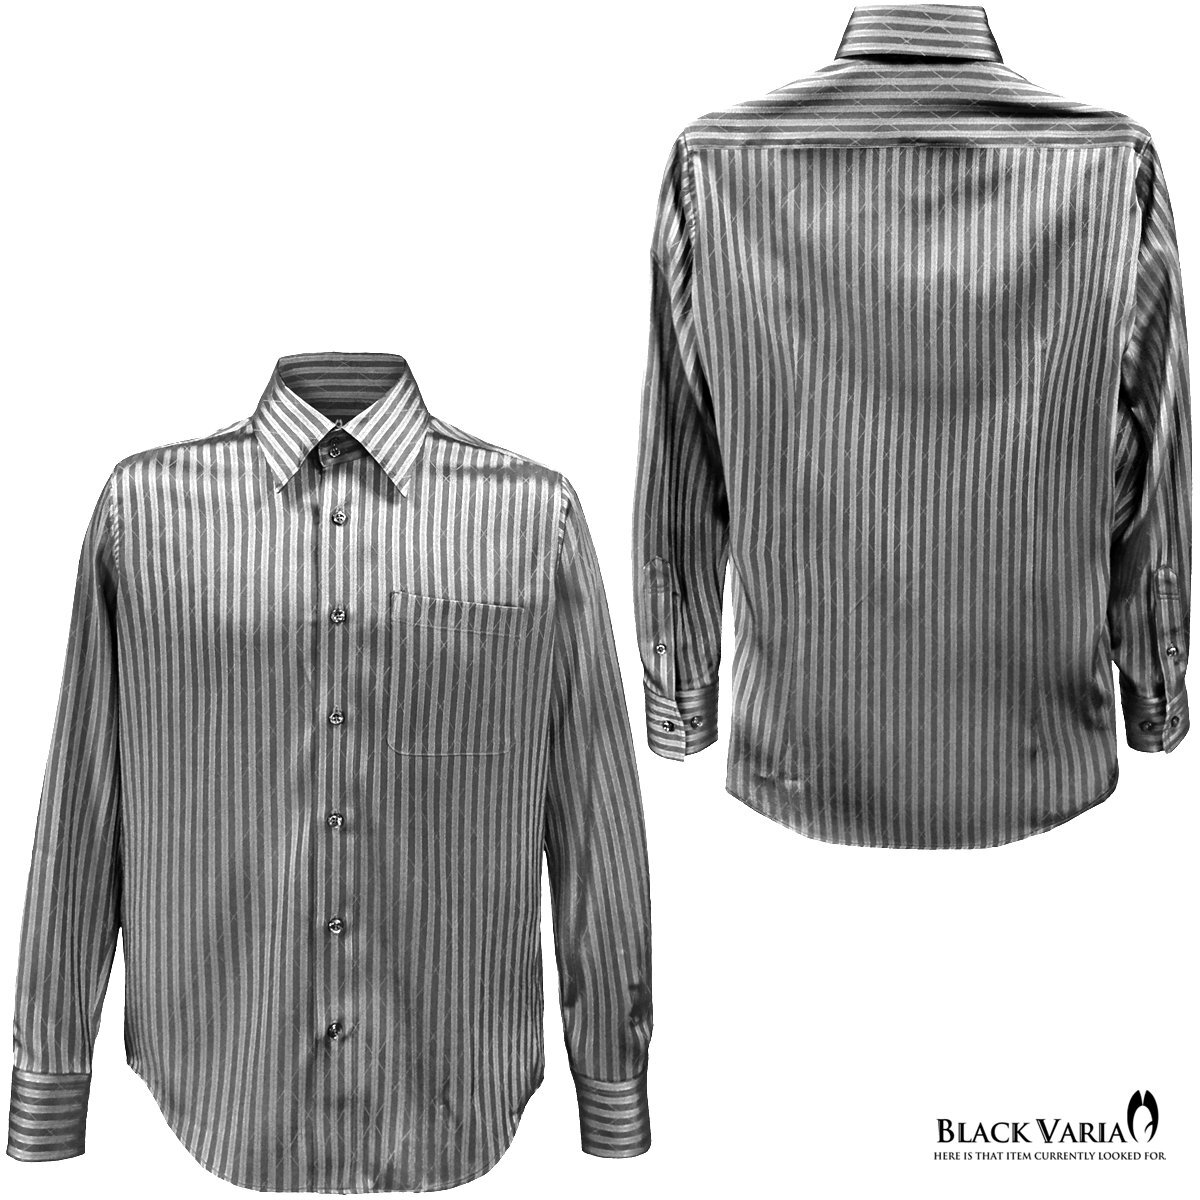 a191850-gy BLACK VARIAドゥエボットーニ ストライプ柄 ジャガード [レギュラーカラー]ドレスシャツ メンズ(グレー灰シルバー銀) M_画像3